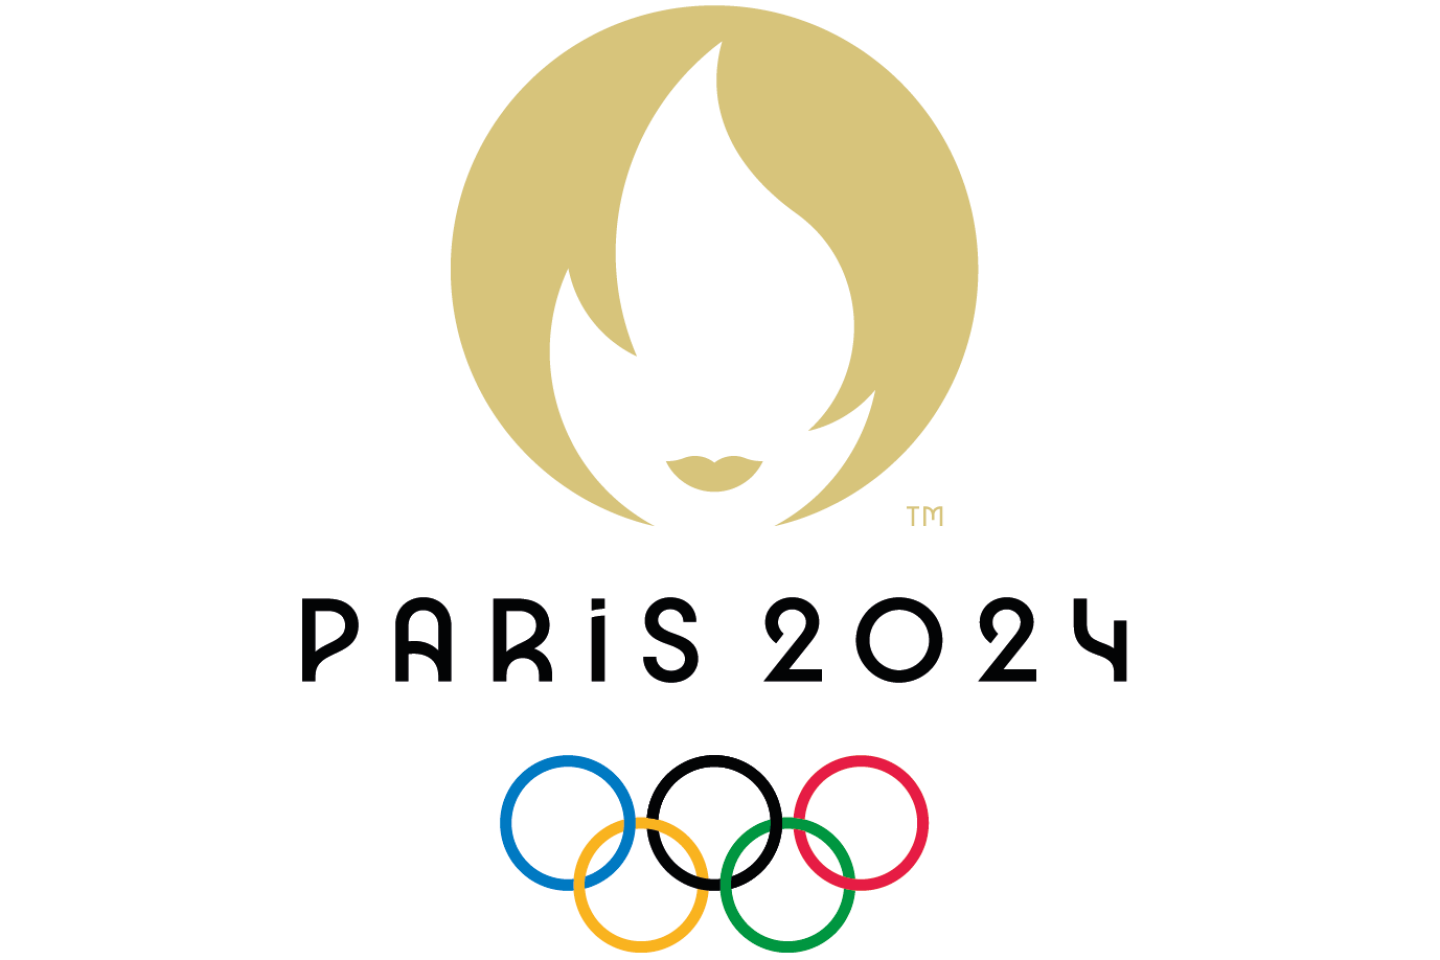 Location de matériel frigorifique pour traiteurs - Jeux Olympiques de Paris 2024